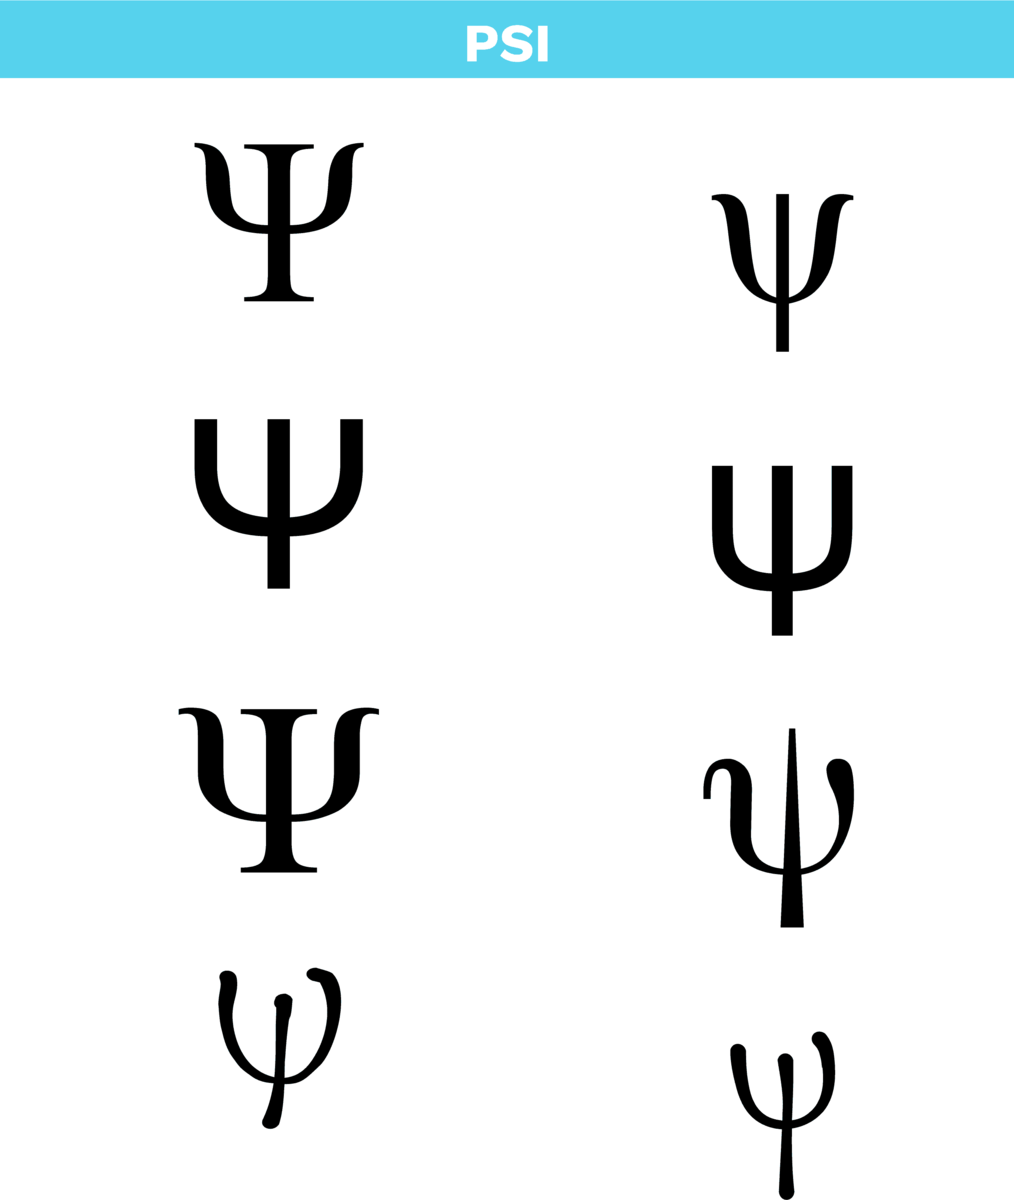 Bokstaven psi i det greske alfabetet i ulike skrifttypar